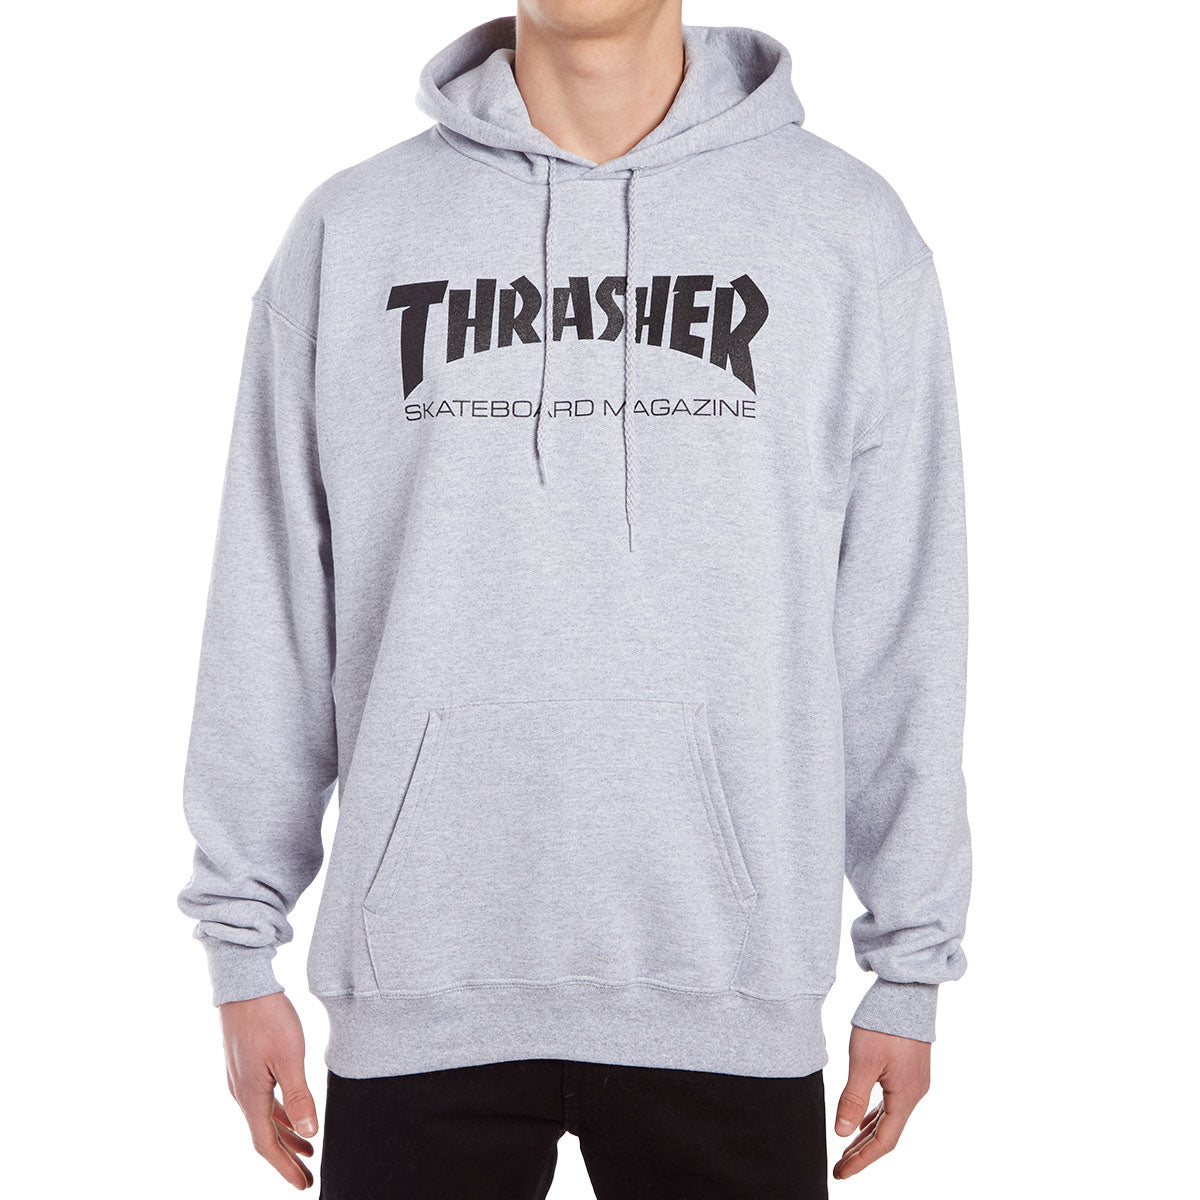 Thrasher Skate Mag Hoodie - Grey image 1